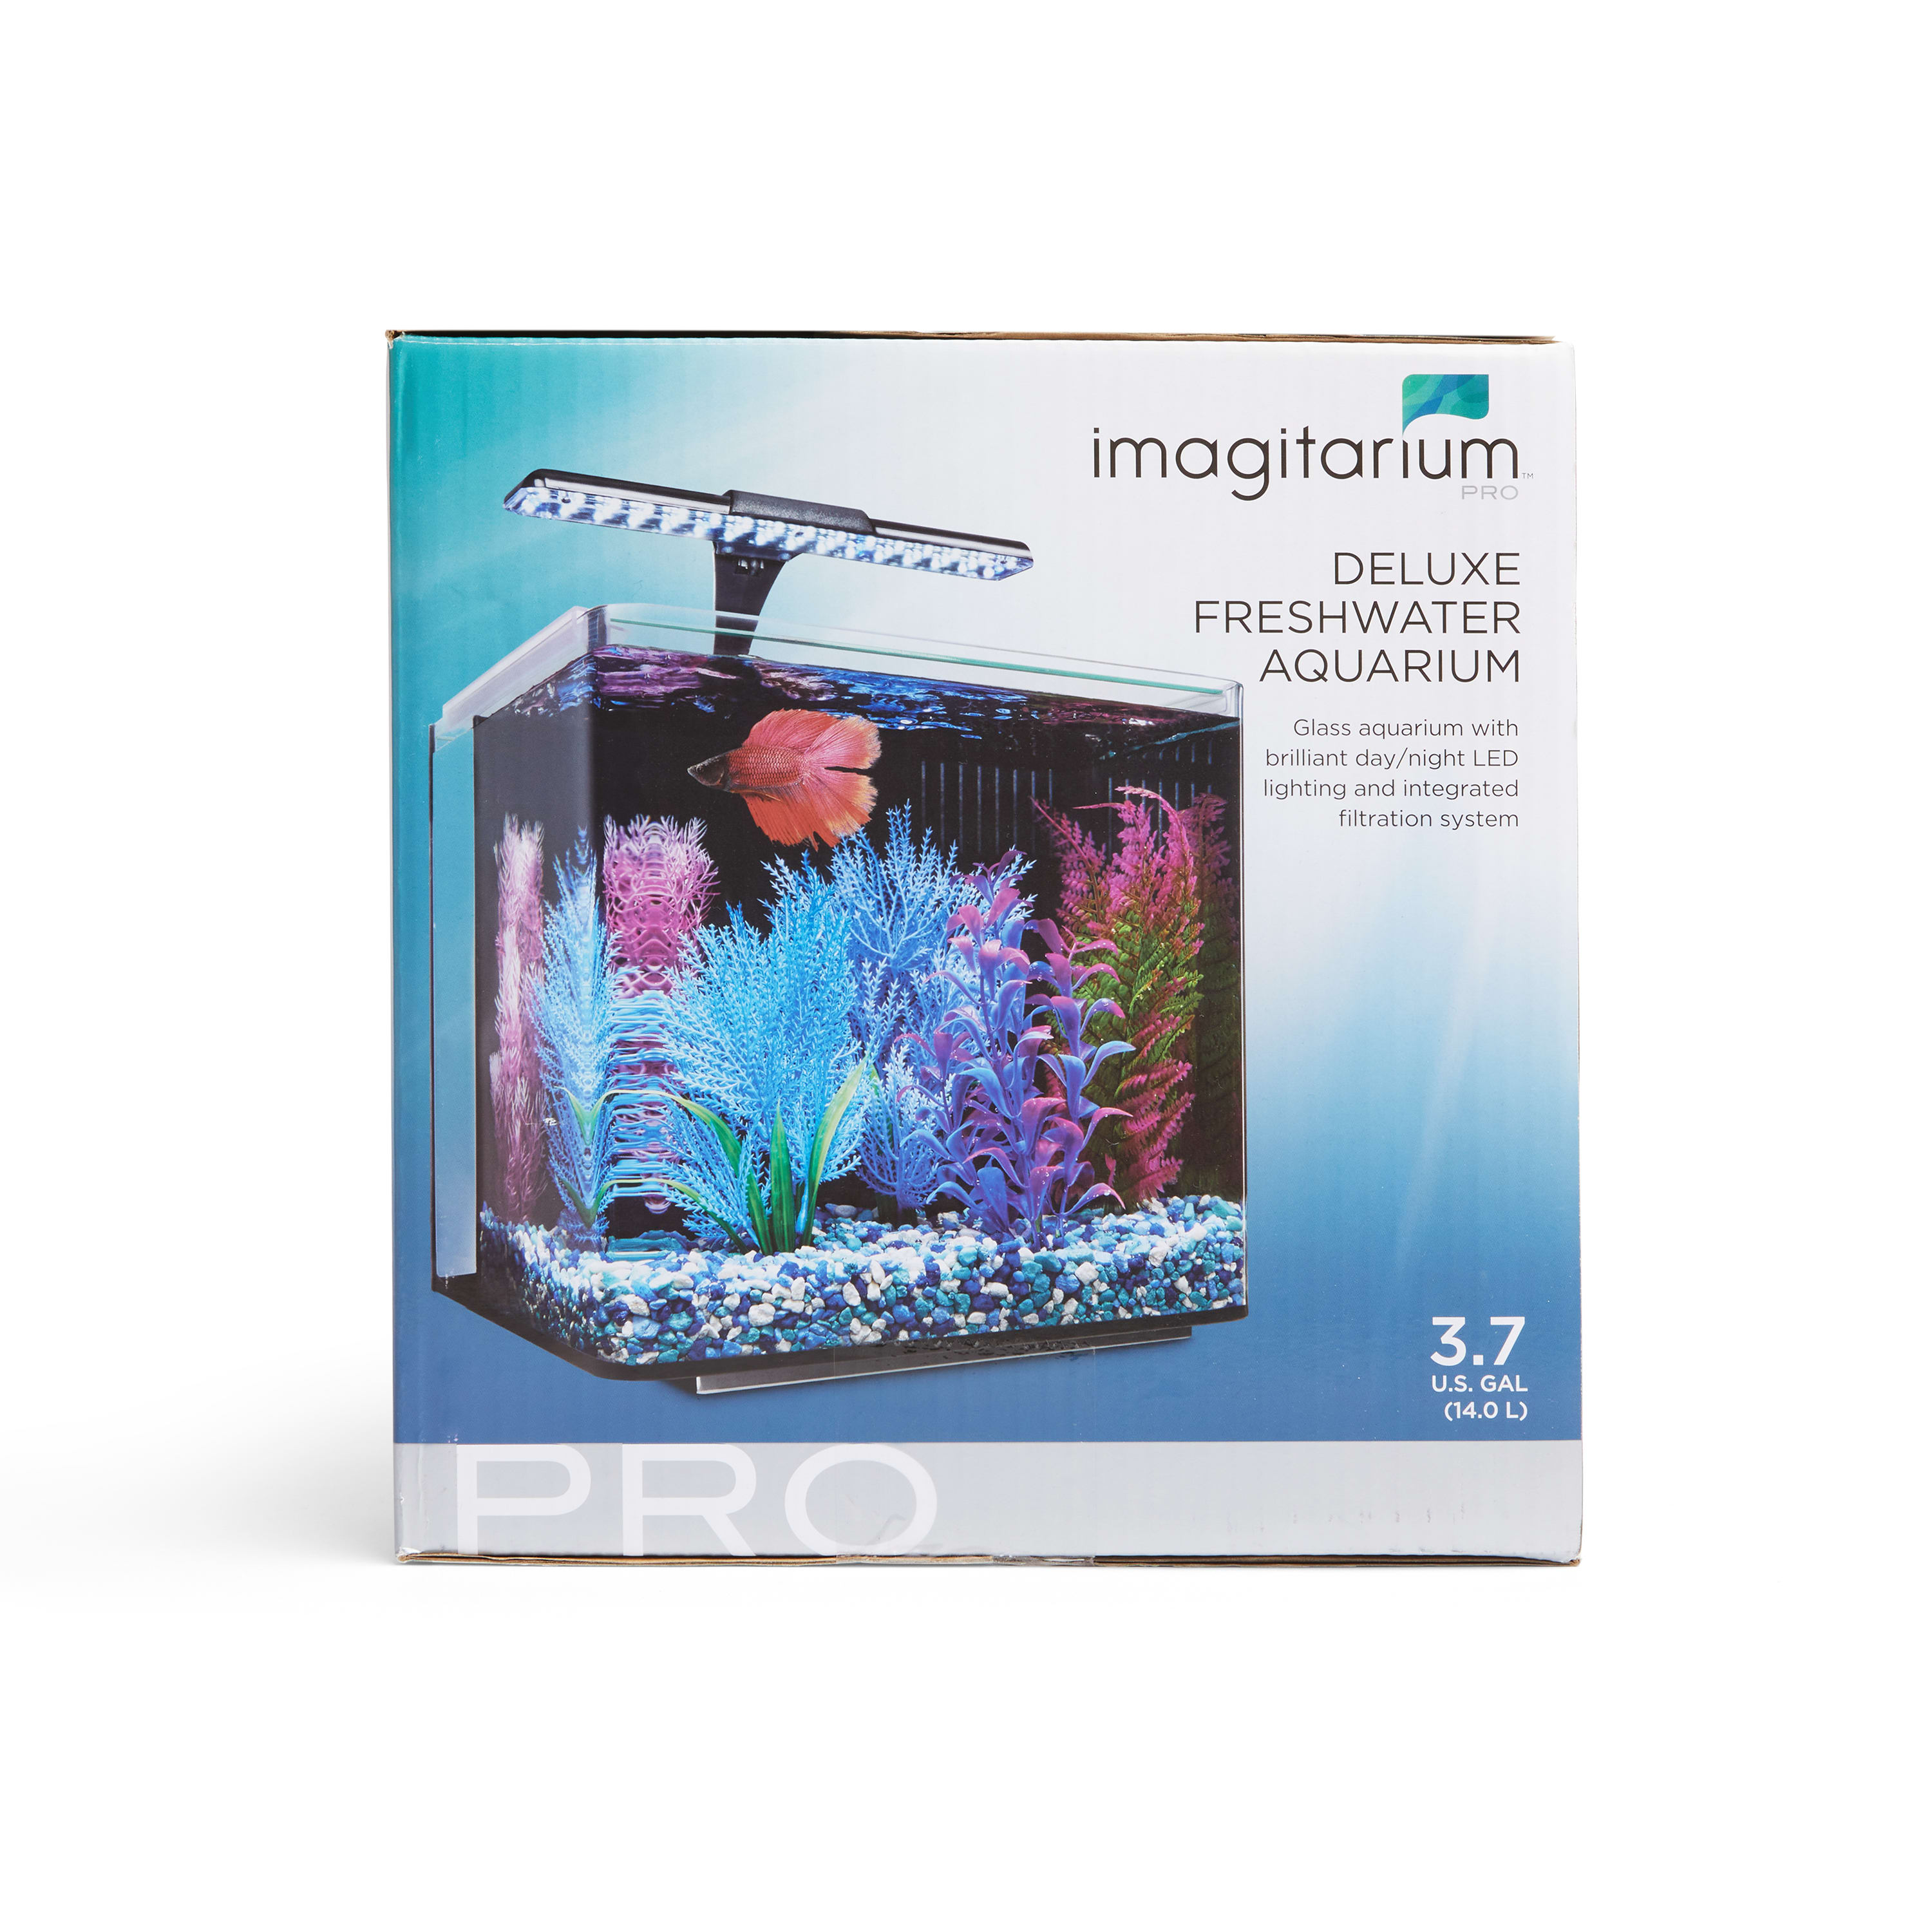 Imagitarium 3.7 Gallon PRO Deluxe Freshwater Aquarium